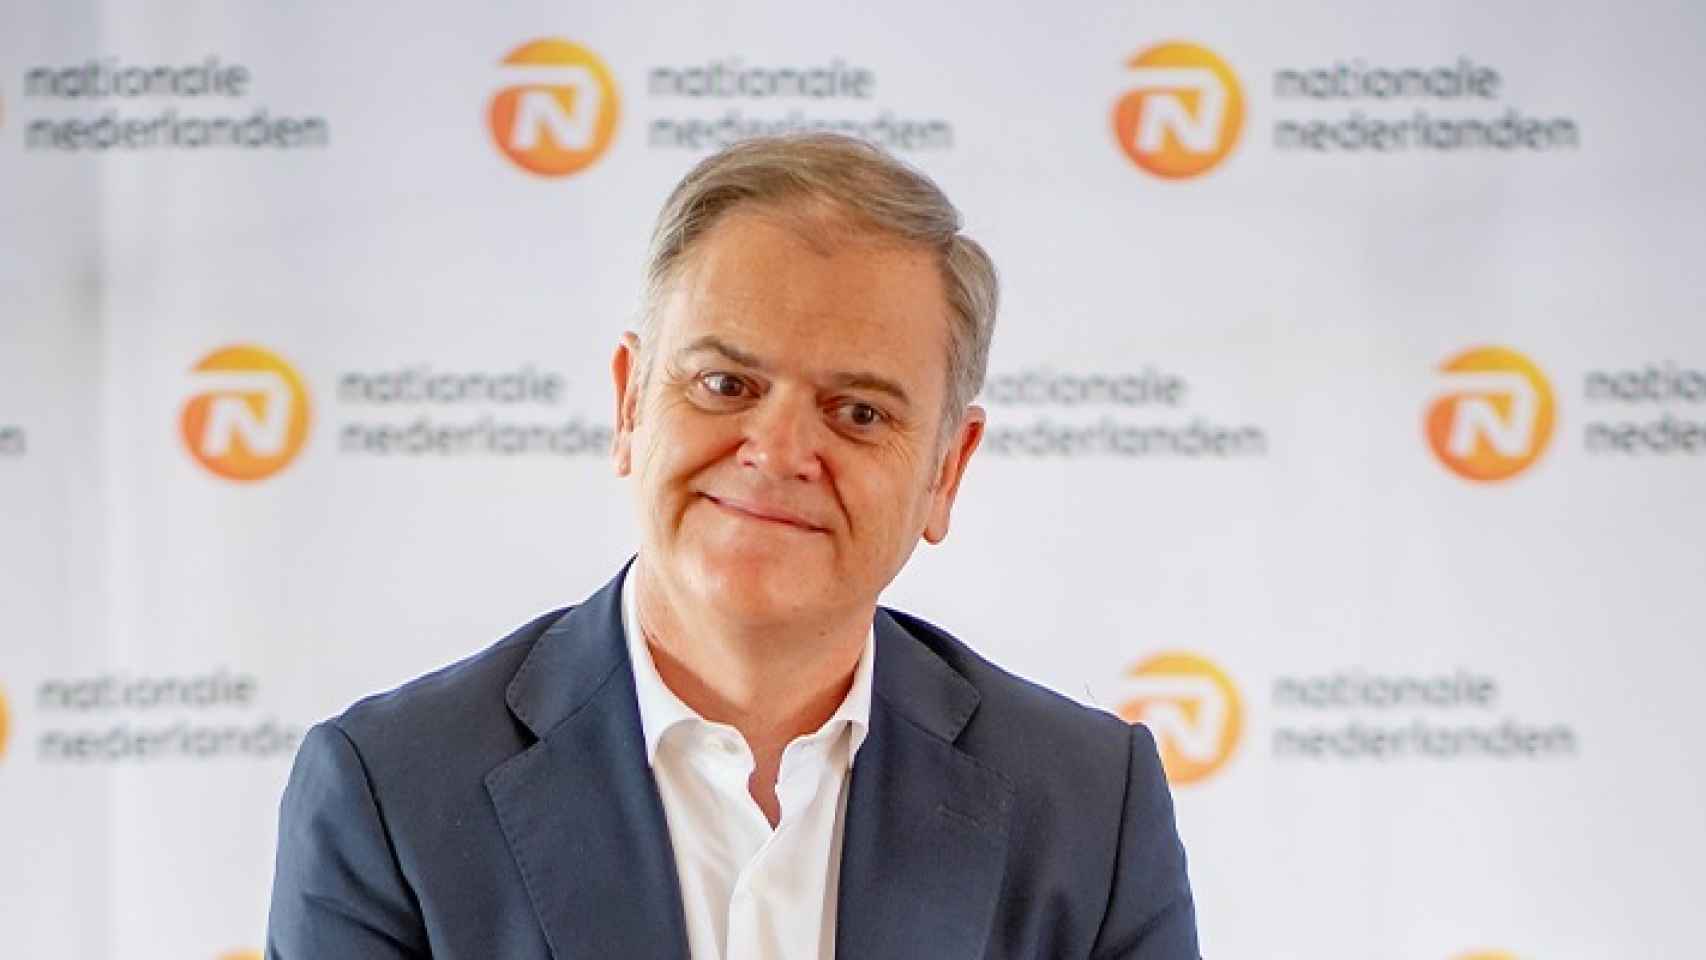 Carlos González Perandones, CEO de Nationale-Nederlanden